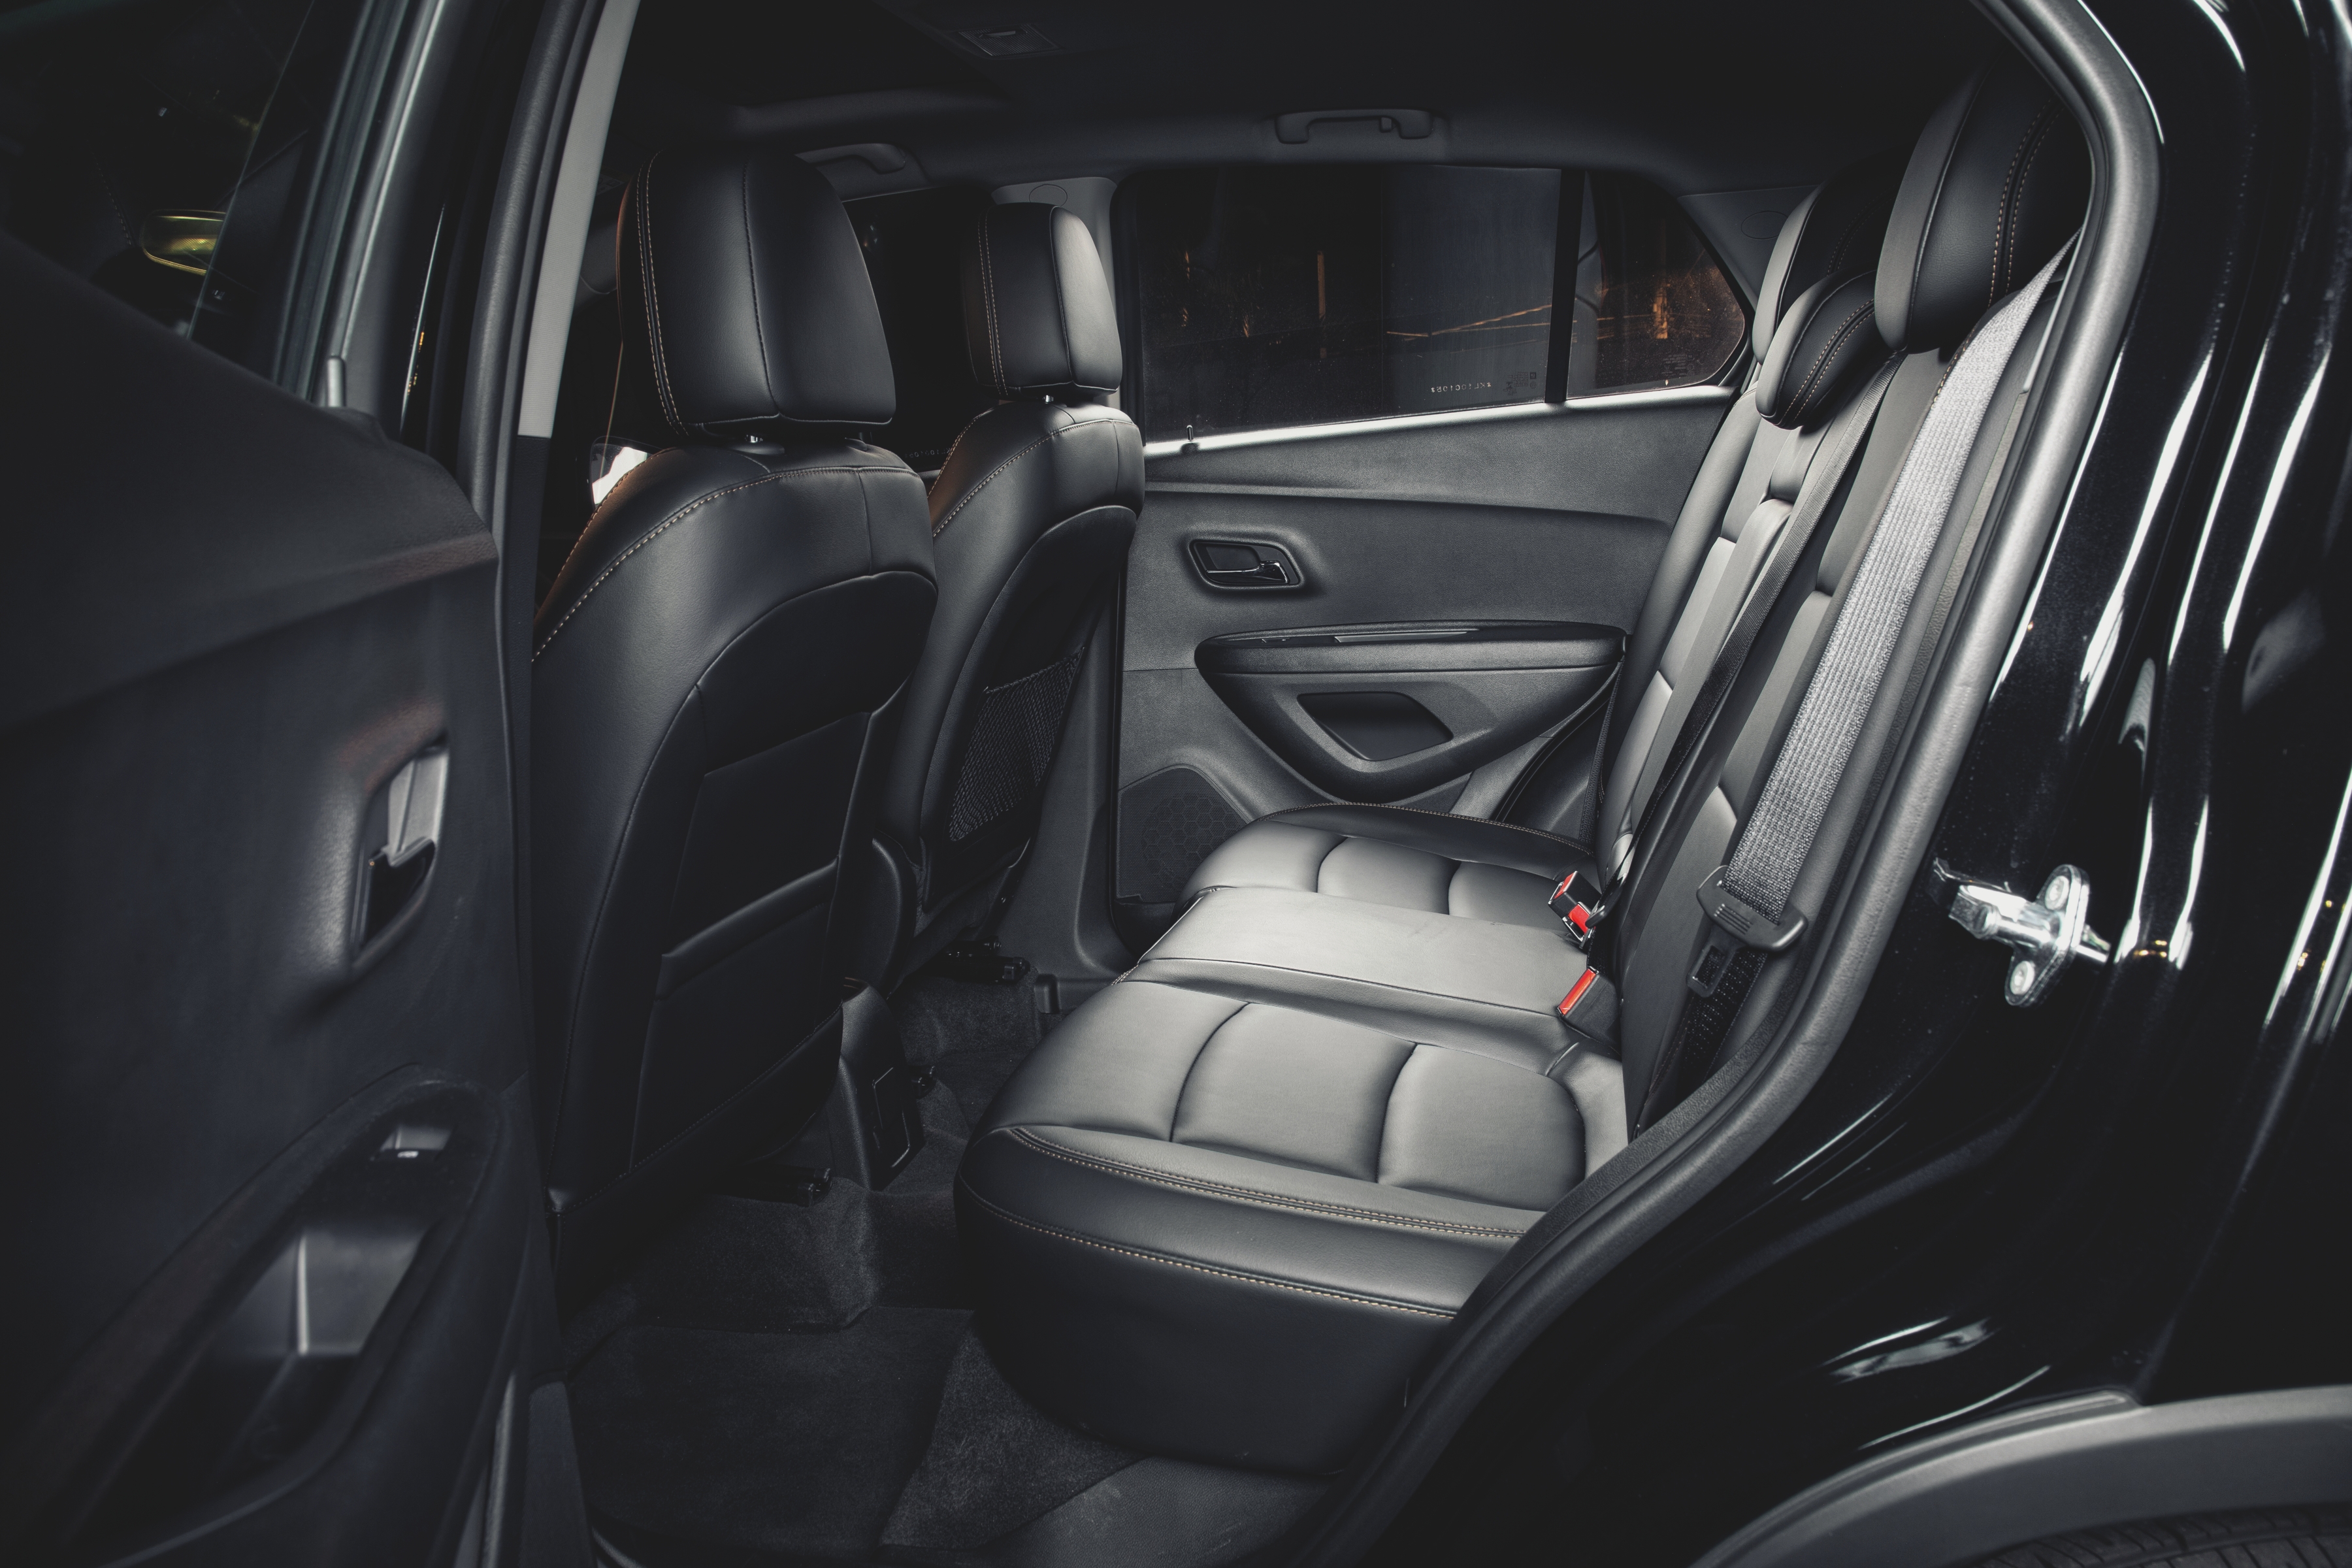  Chevrolet Tracker Midnight tem espaço interno apenas ok; porta-malas fica devendo até para alguns hatches médios